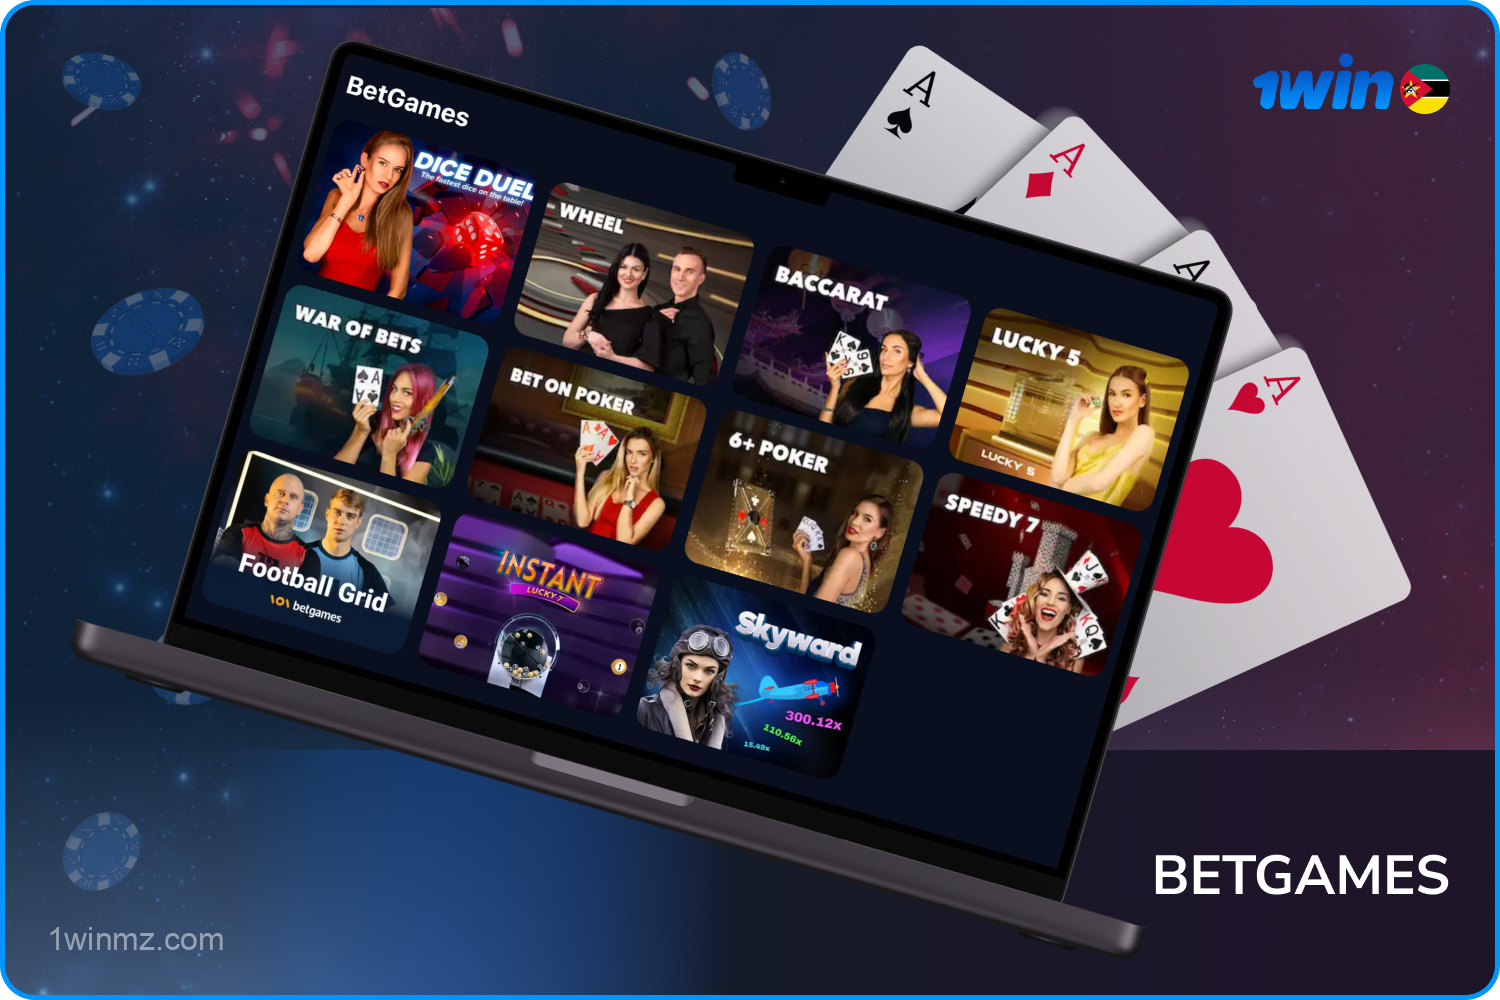 1win Casino oferece aos seus usuários jogos da BetGames